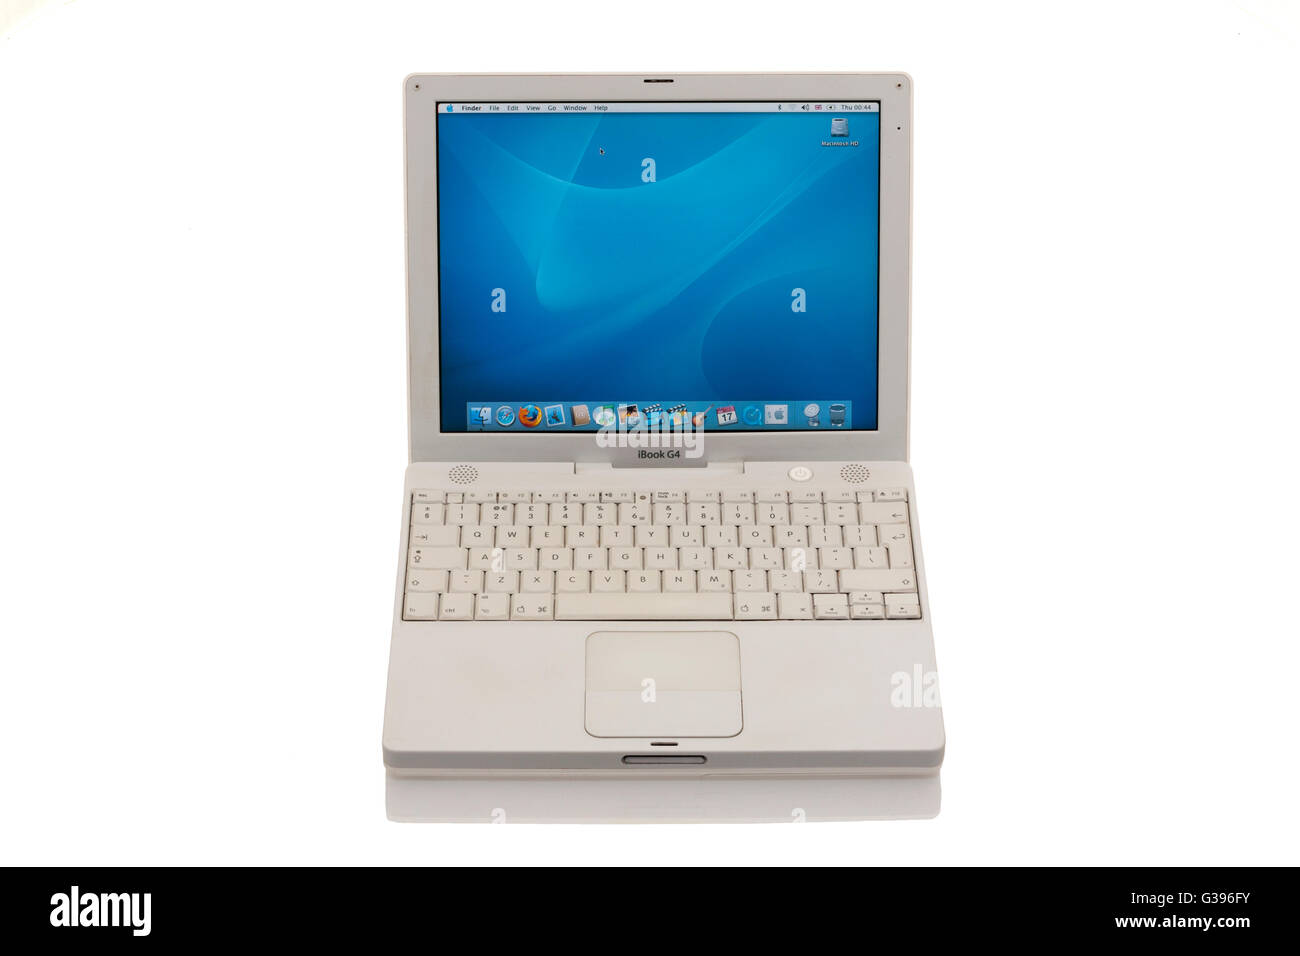 Apple iBook G4 / laptop computer lap top con trackpad di scorrimento / trackpad / track pad, schermata home & tastiera. Foto Stock